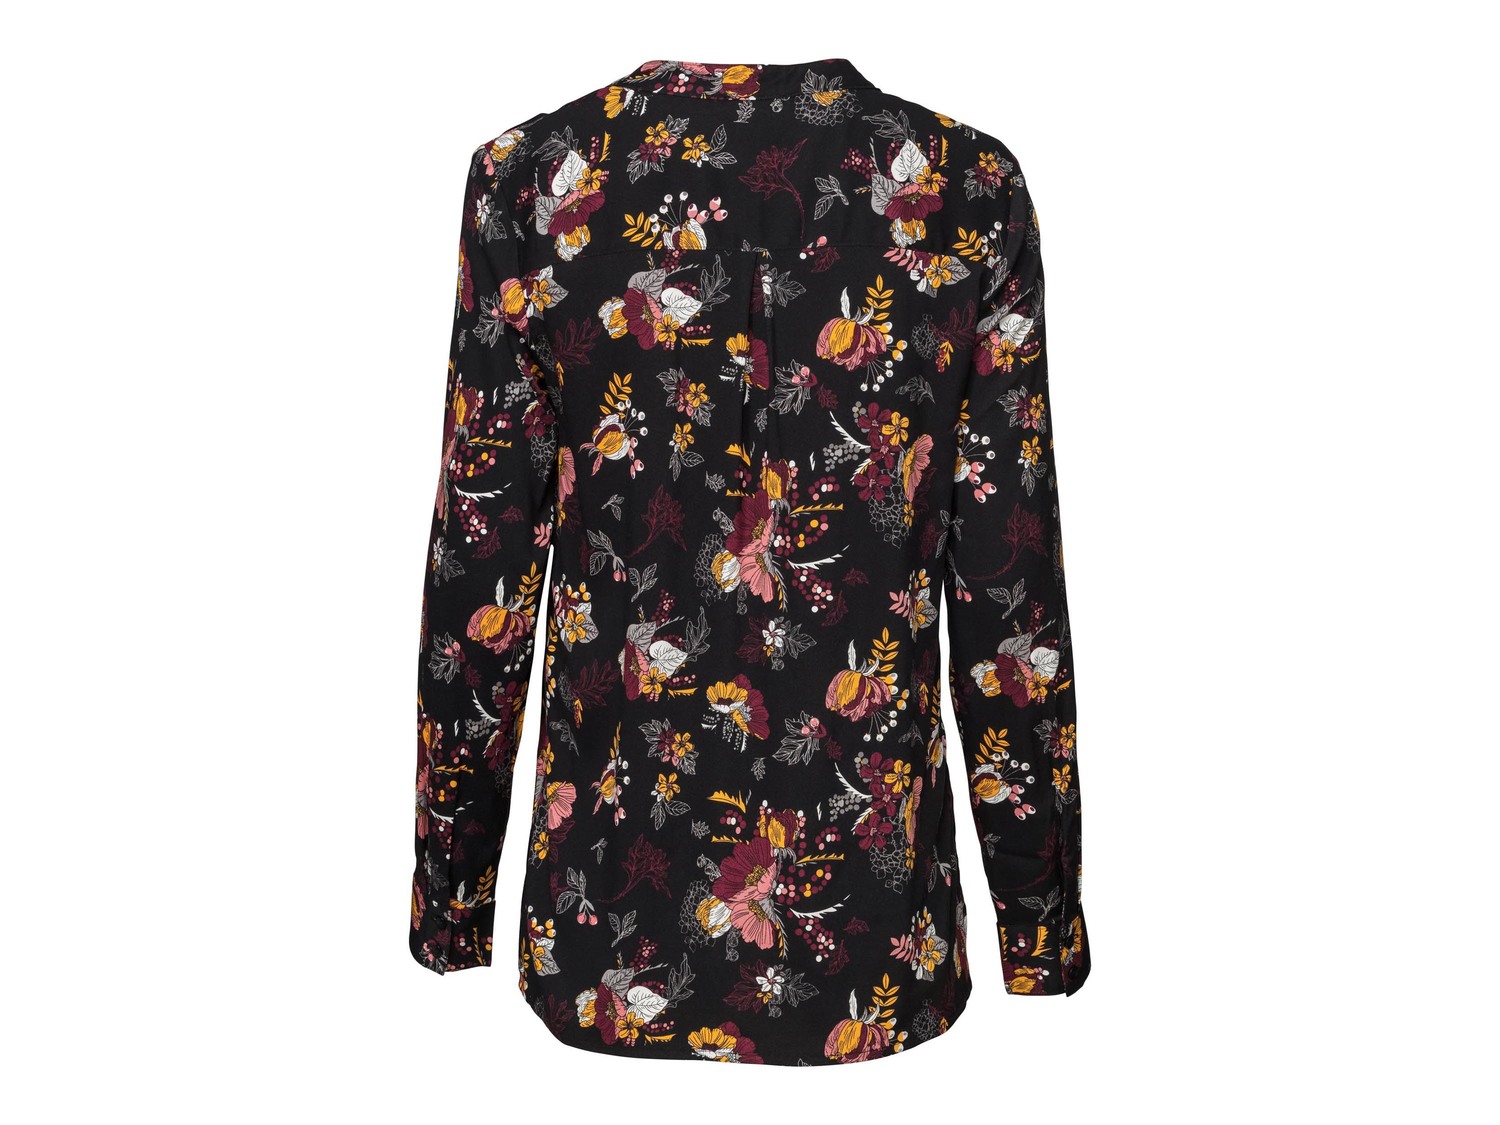 Camicia da donna Esmara, prezzo 8.99 &#8364;  
Misure: 38-46
- Oeko tex NEW